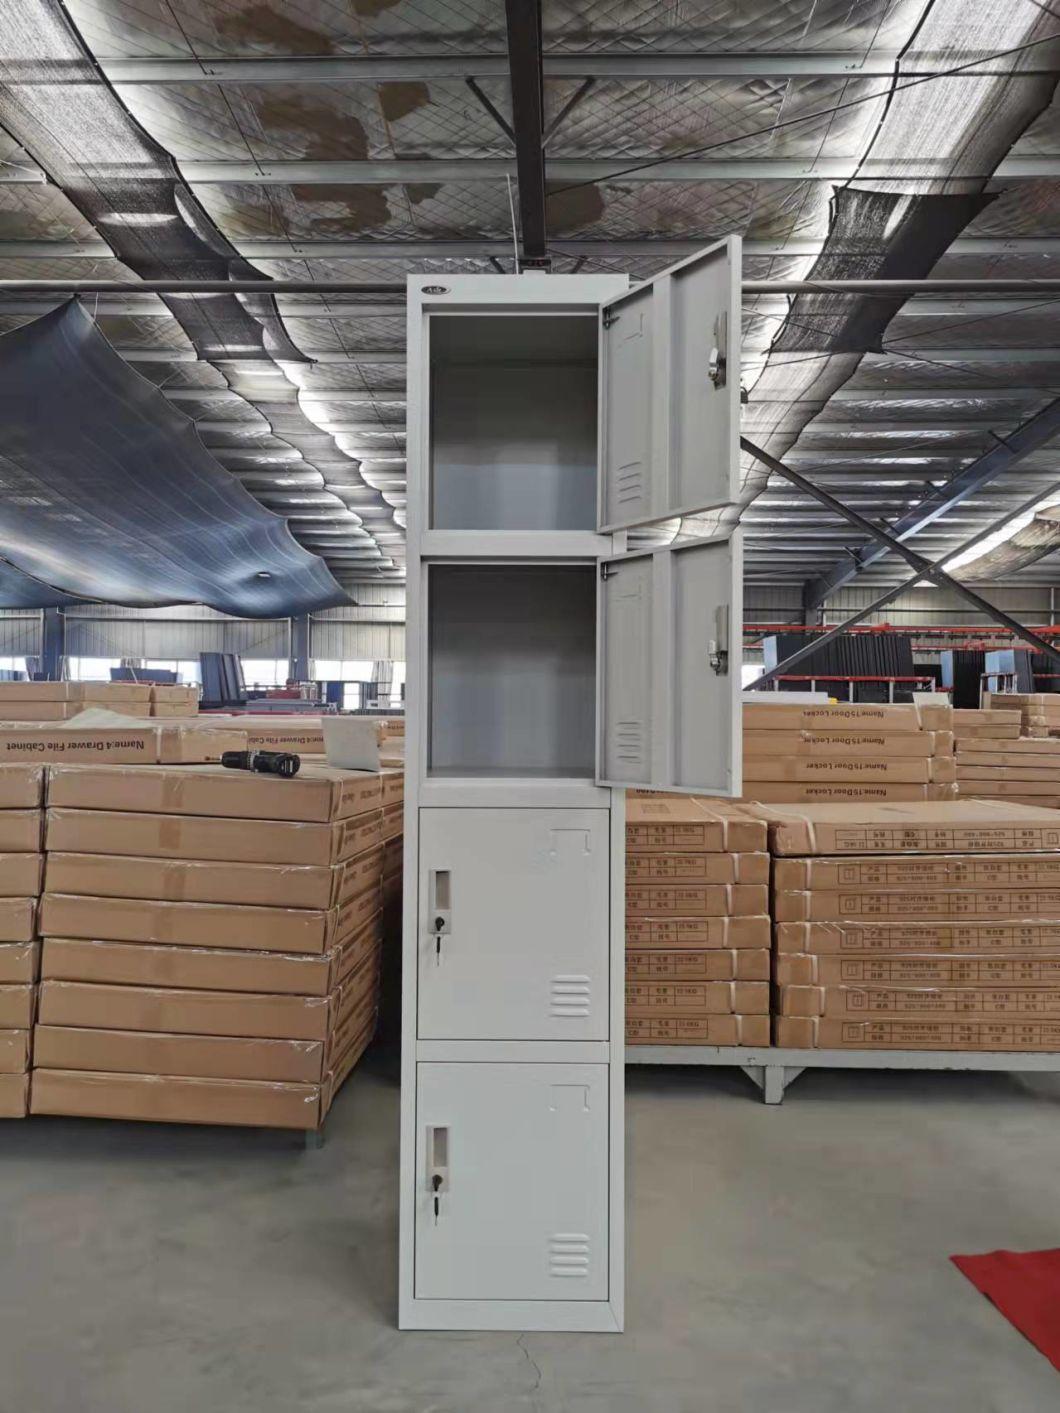 Cold Rolled Steel 4 Door Locker Made in China Cheap Staffs Storage Locker